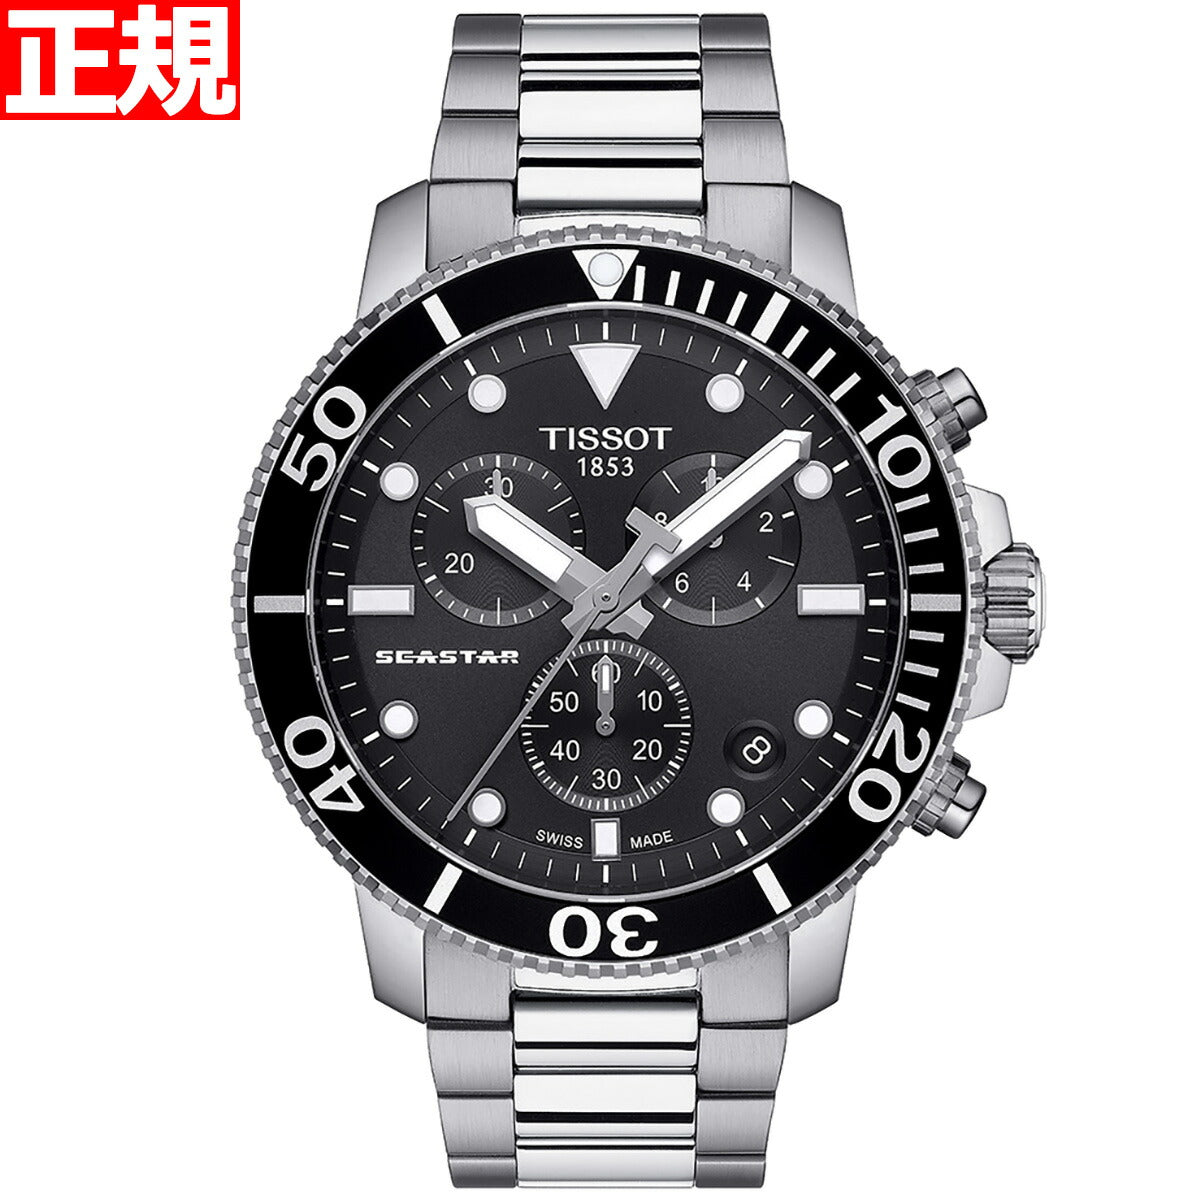 ティソ TISSOT 腕時計 メンズ シースター 1000 クロノグラフ SEASTAR